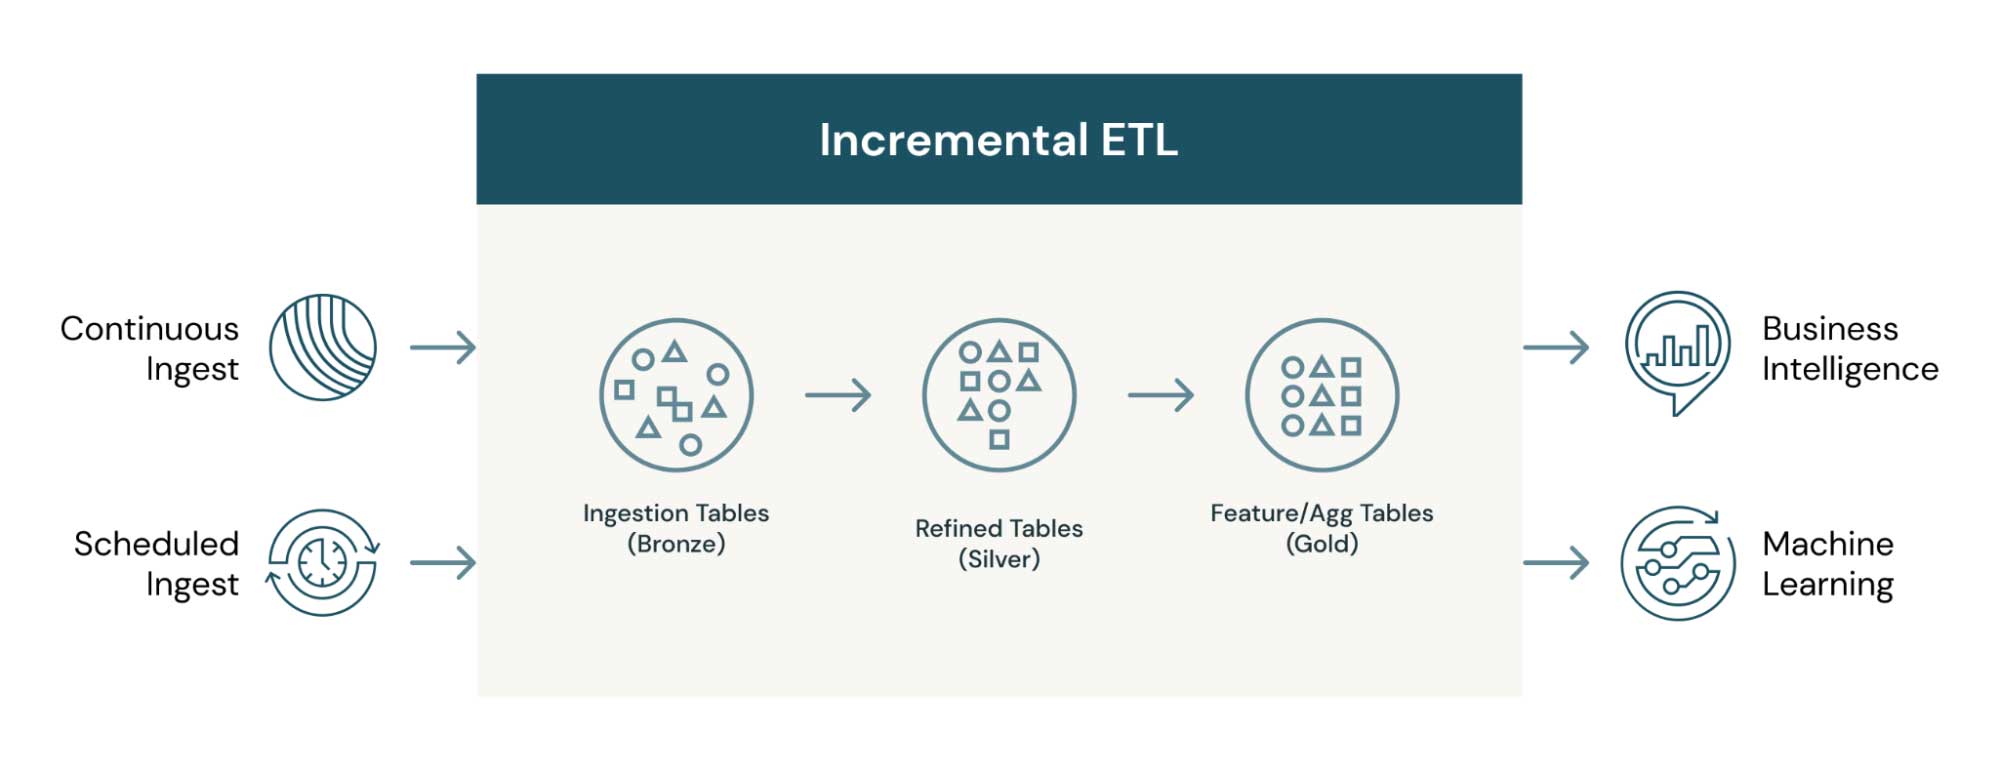 砖の増分ETLプロセスは,メダリオン(ゴールド・シルバー・ブロンズ)テーブルのアーキテクチャを可能かつ効率的にします。あらゆるデ，タ消費者は，ニ，ズに合った適切なキュレ，ションデ，タセットの利用が可能になります。